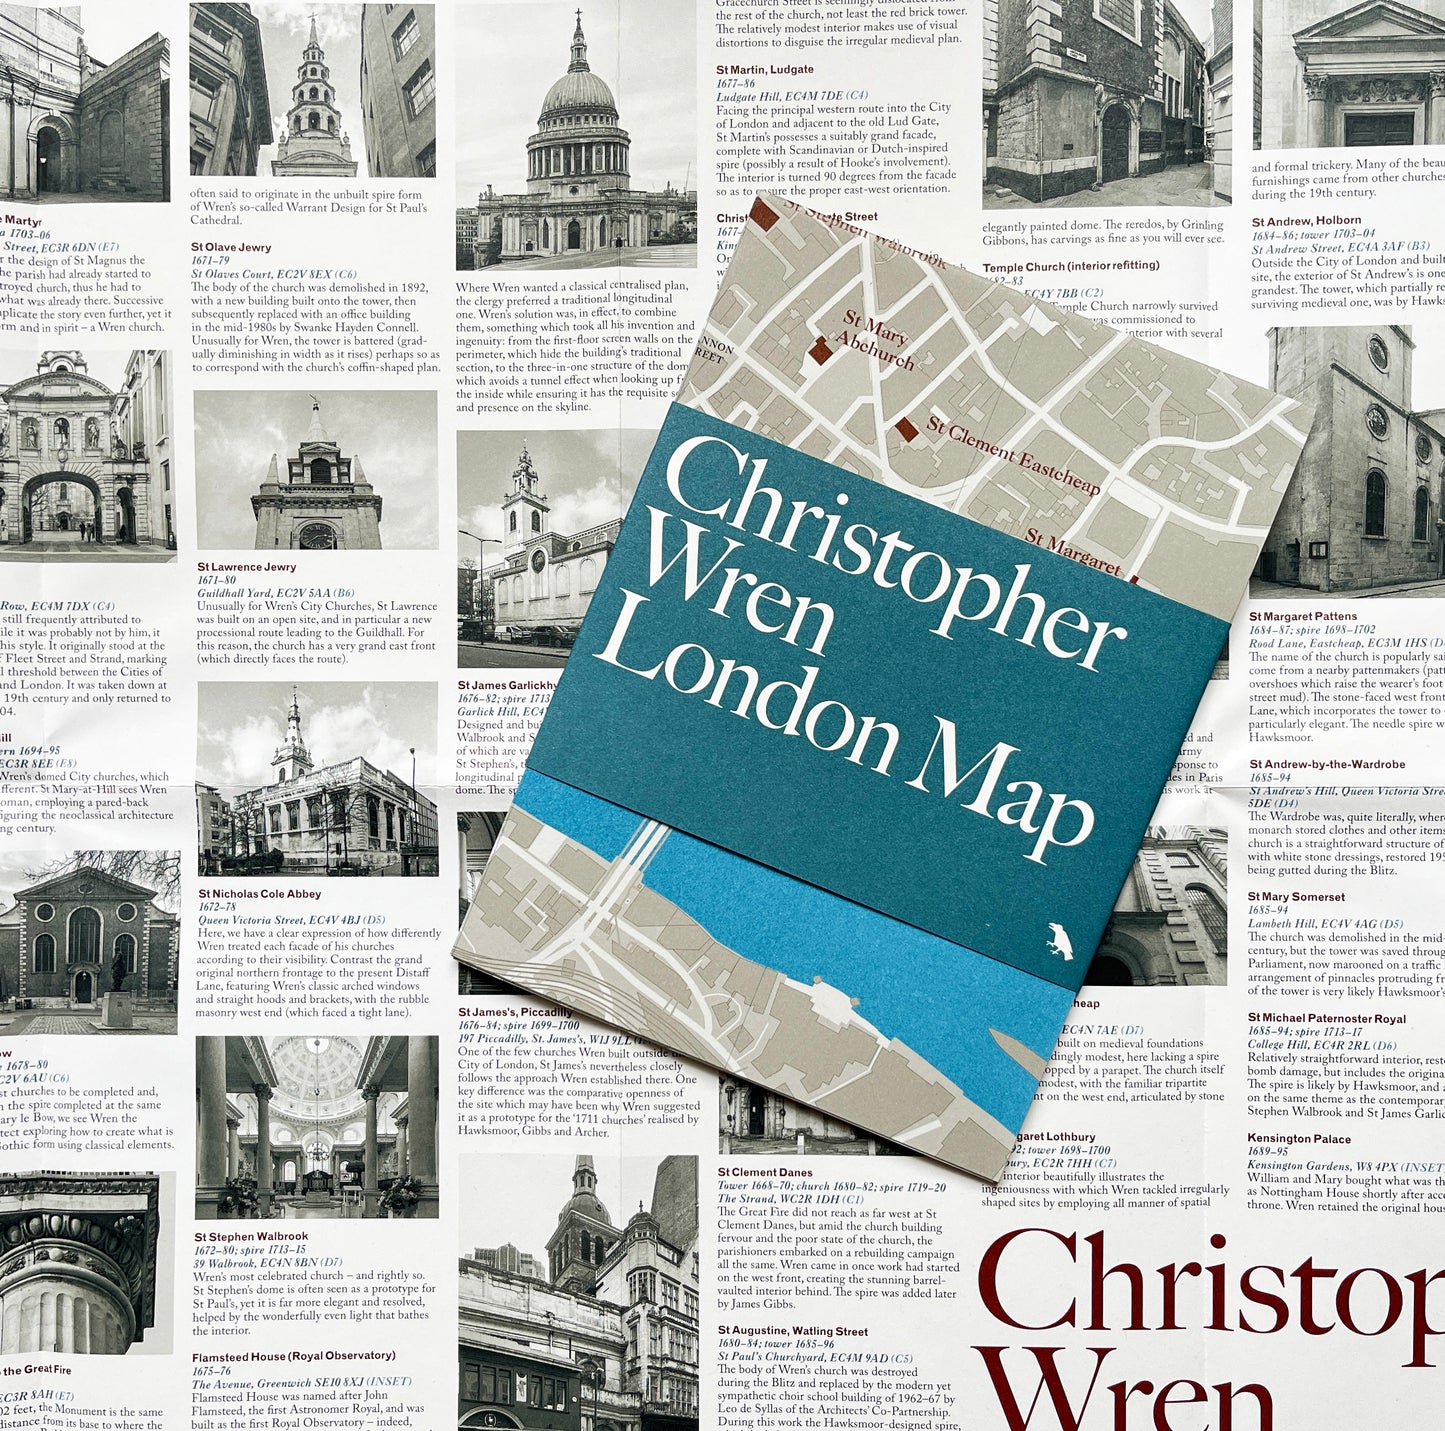 Christopher Wren London Map